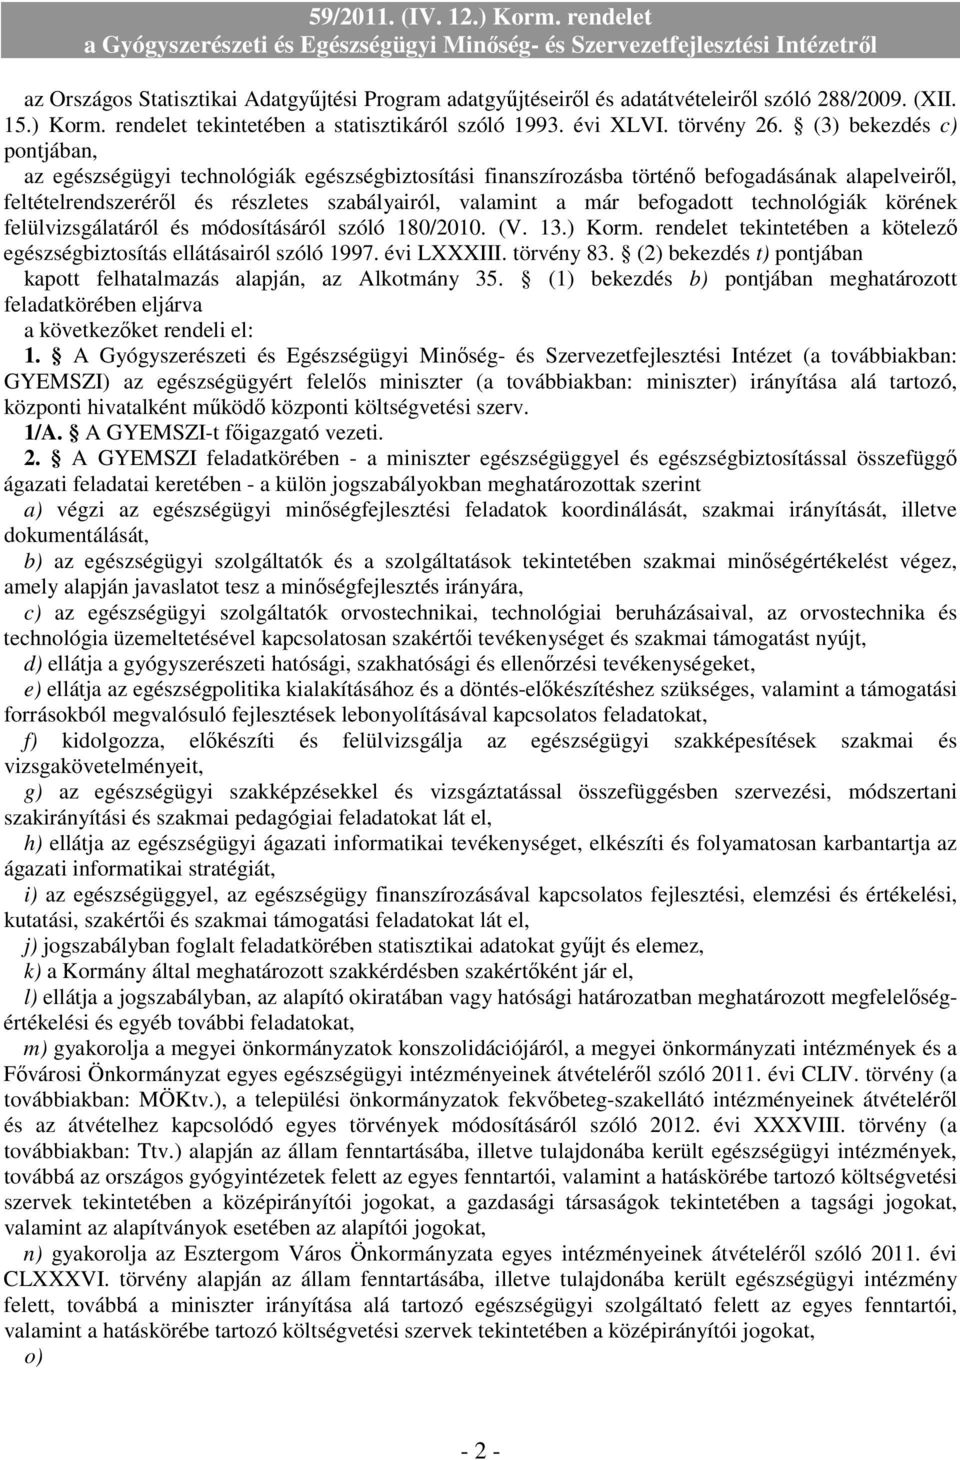 befogadott technológiák körének felülvizsgálatáról és módosításáról szóló 180/2010. (V. 13.) Korm. rendelet tekintetében a kötelezı egészségbiztosítás ellátásairól szóló 1997. évi LXXXIII. törvény 83.